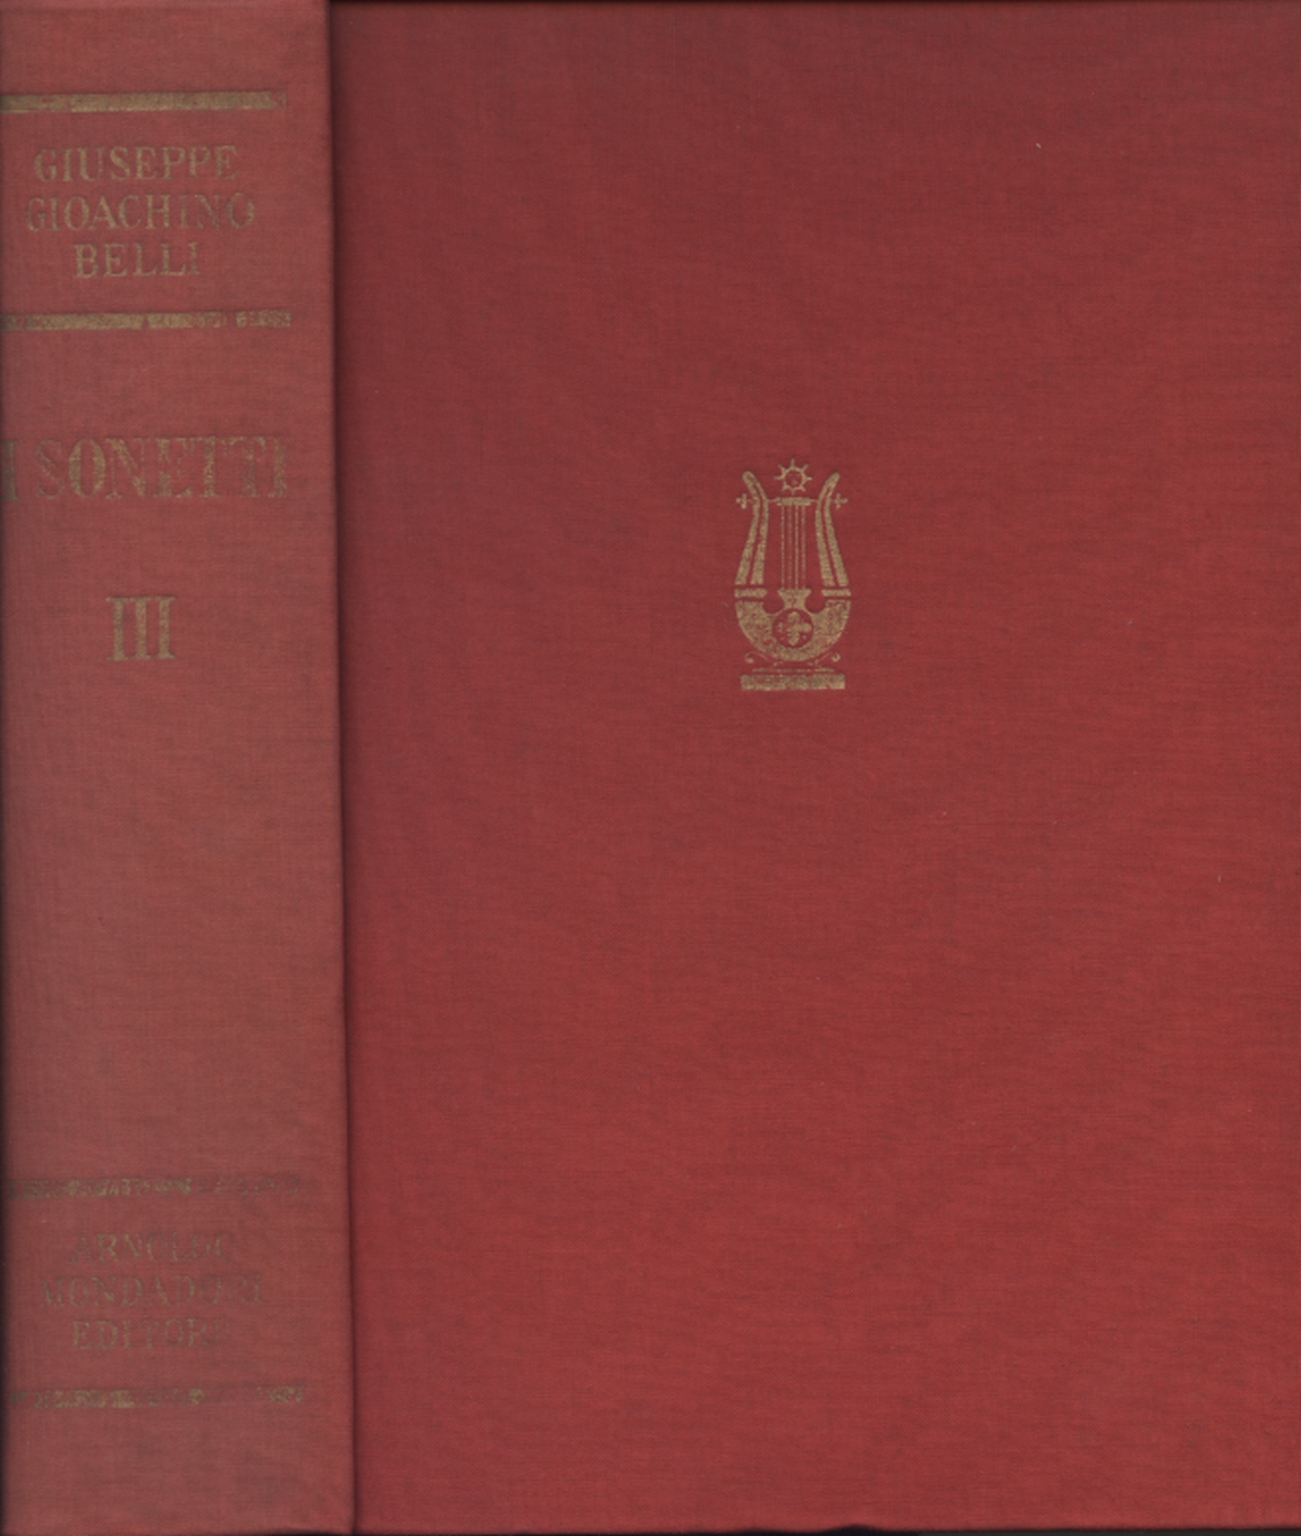 The sonnets of Giuseppe Gioachino Belli (Volume tert Giorgio Vigolo